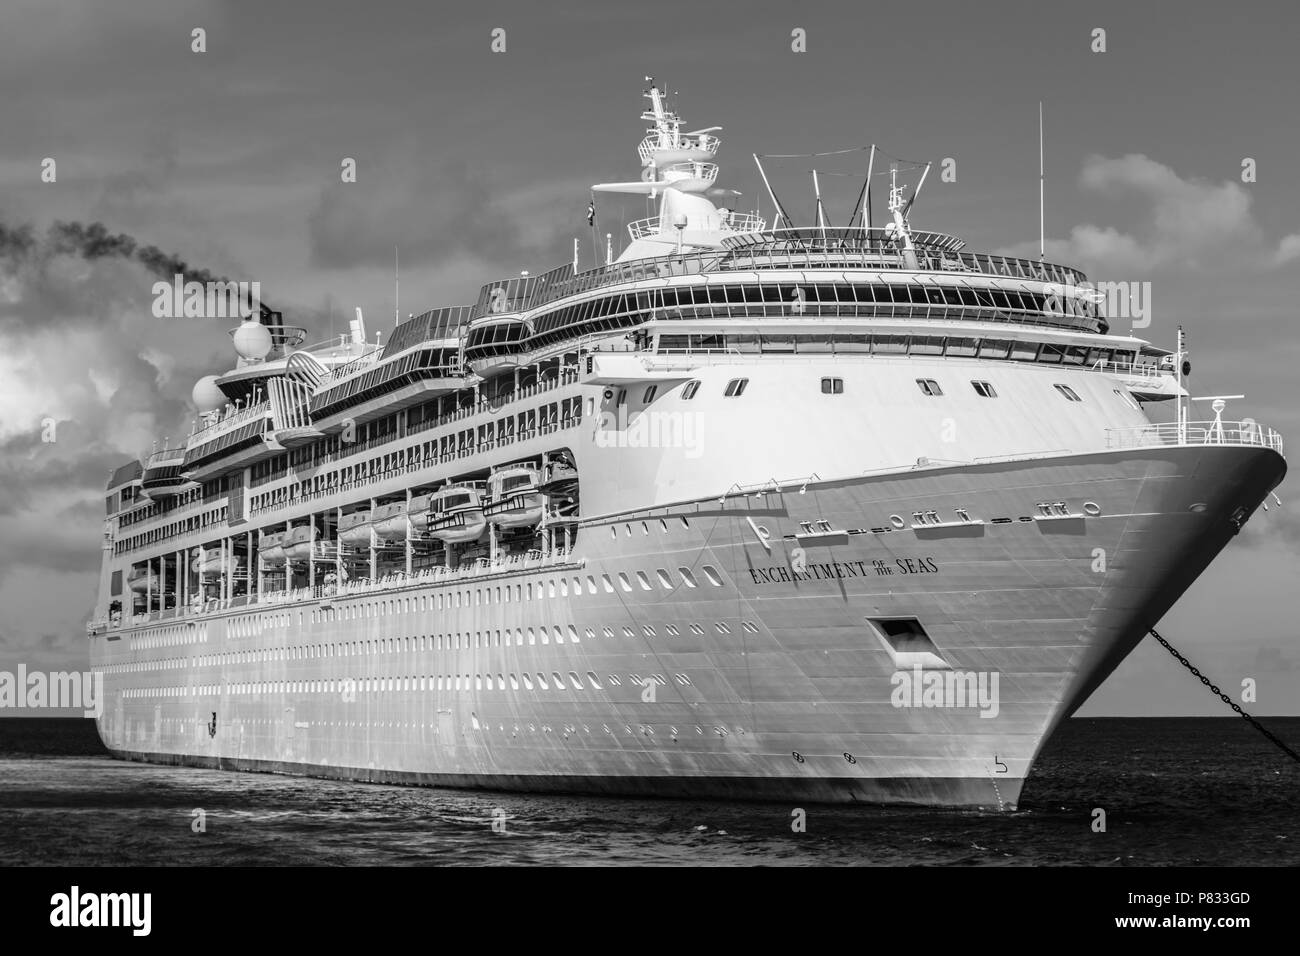 CoCo Cay, Bahamas - 01 décembre 2015 : Royal Caribbean Enchantment of the Seas bateau de croisière. Banque D'Images